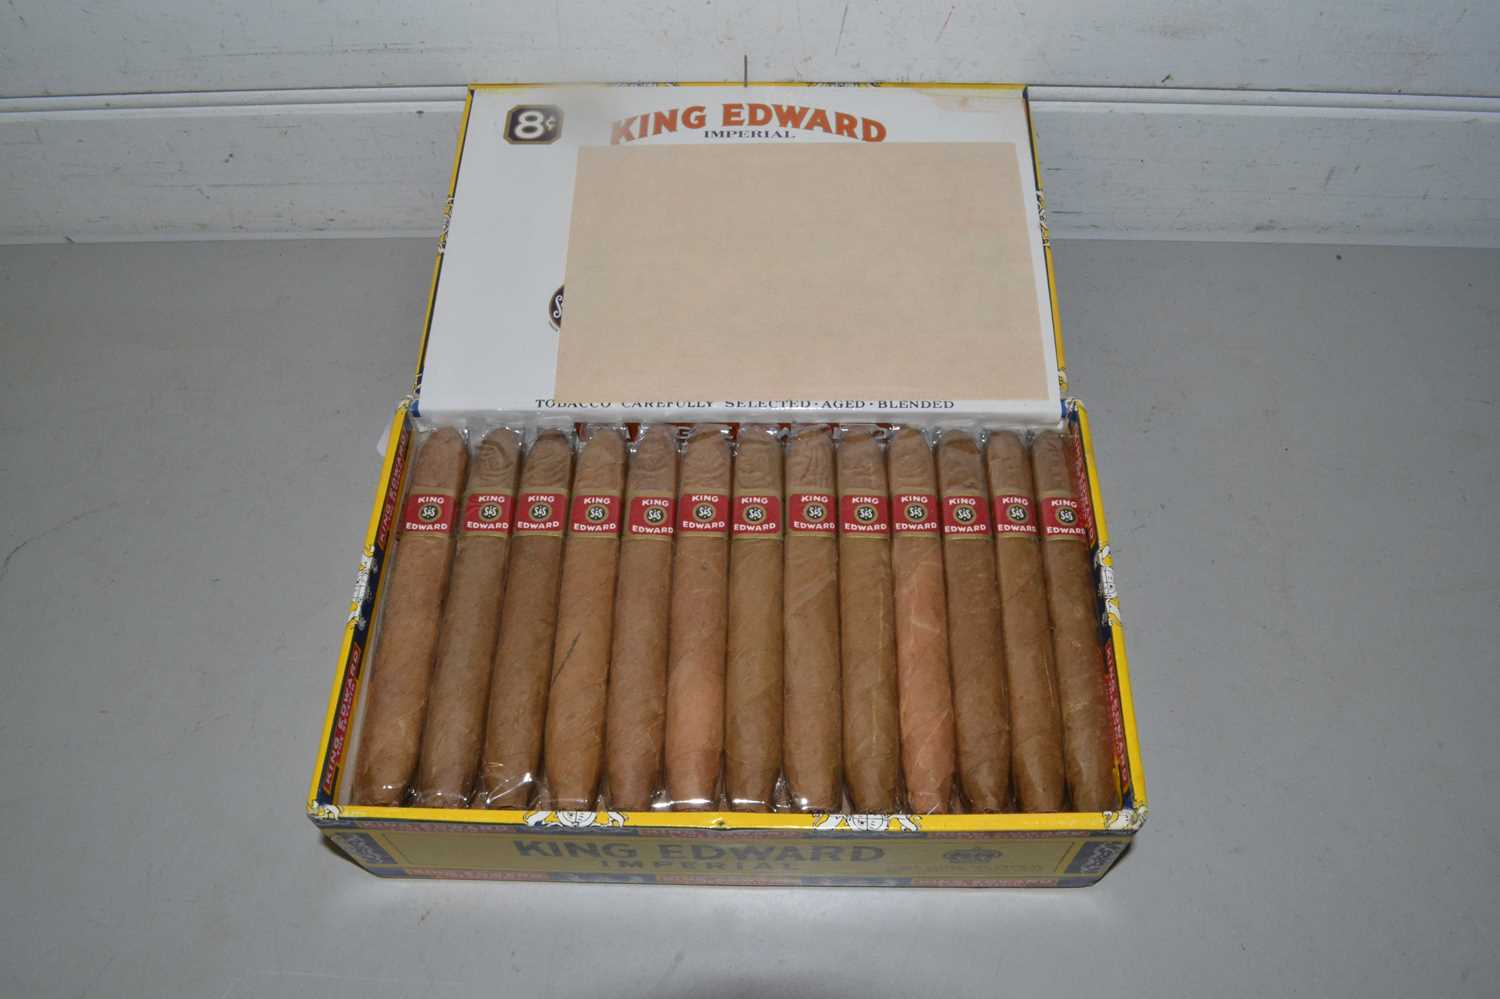 Box of King Edward cigars